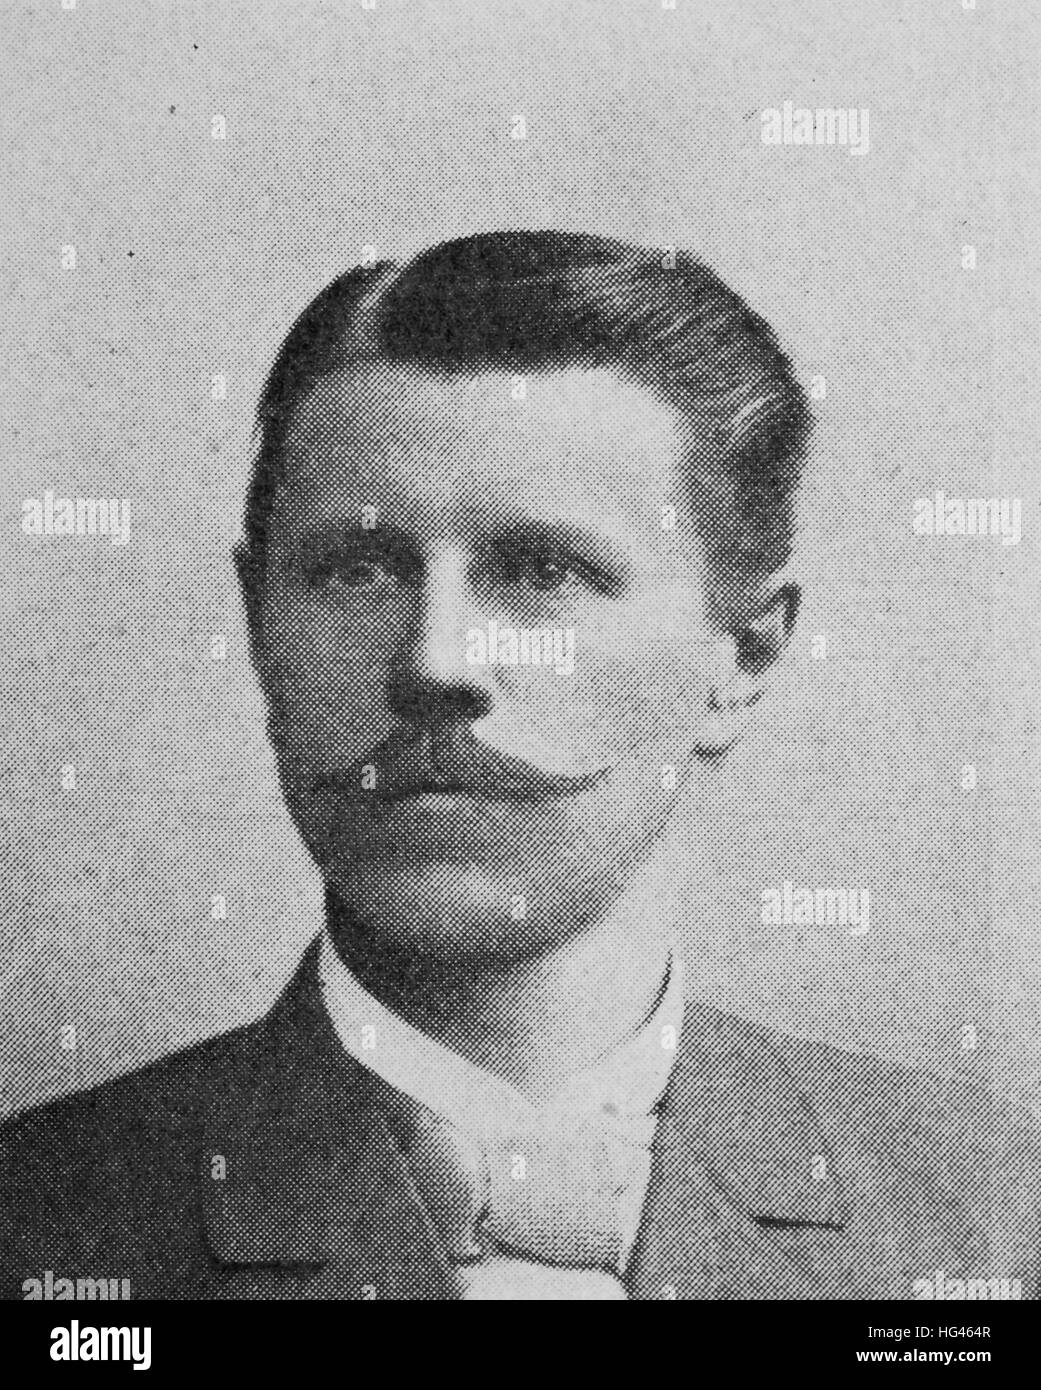 Carl Johann Emil Treptow, nato il 20 giugno 1854; morì il 20 novembre 1935, era un tedesco mining scienziato, riproduzione di una foto a partire dall'anno 1895, digitale migliorata Foto Stock